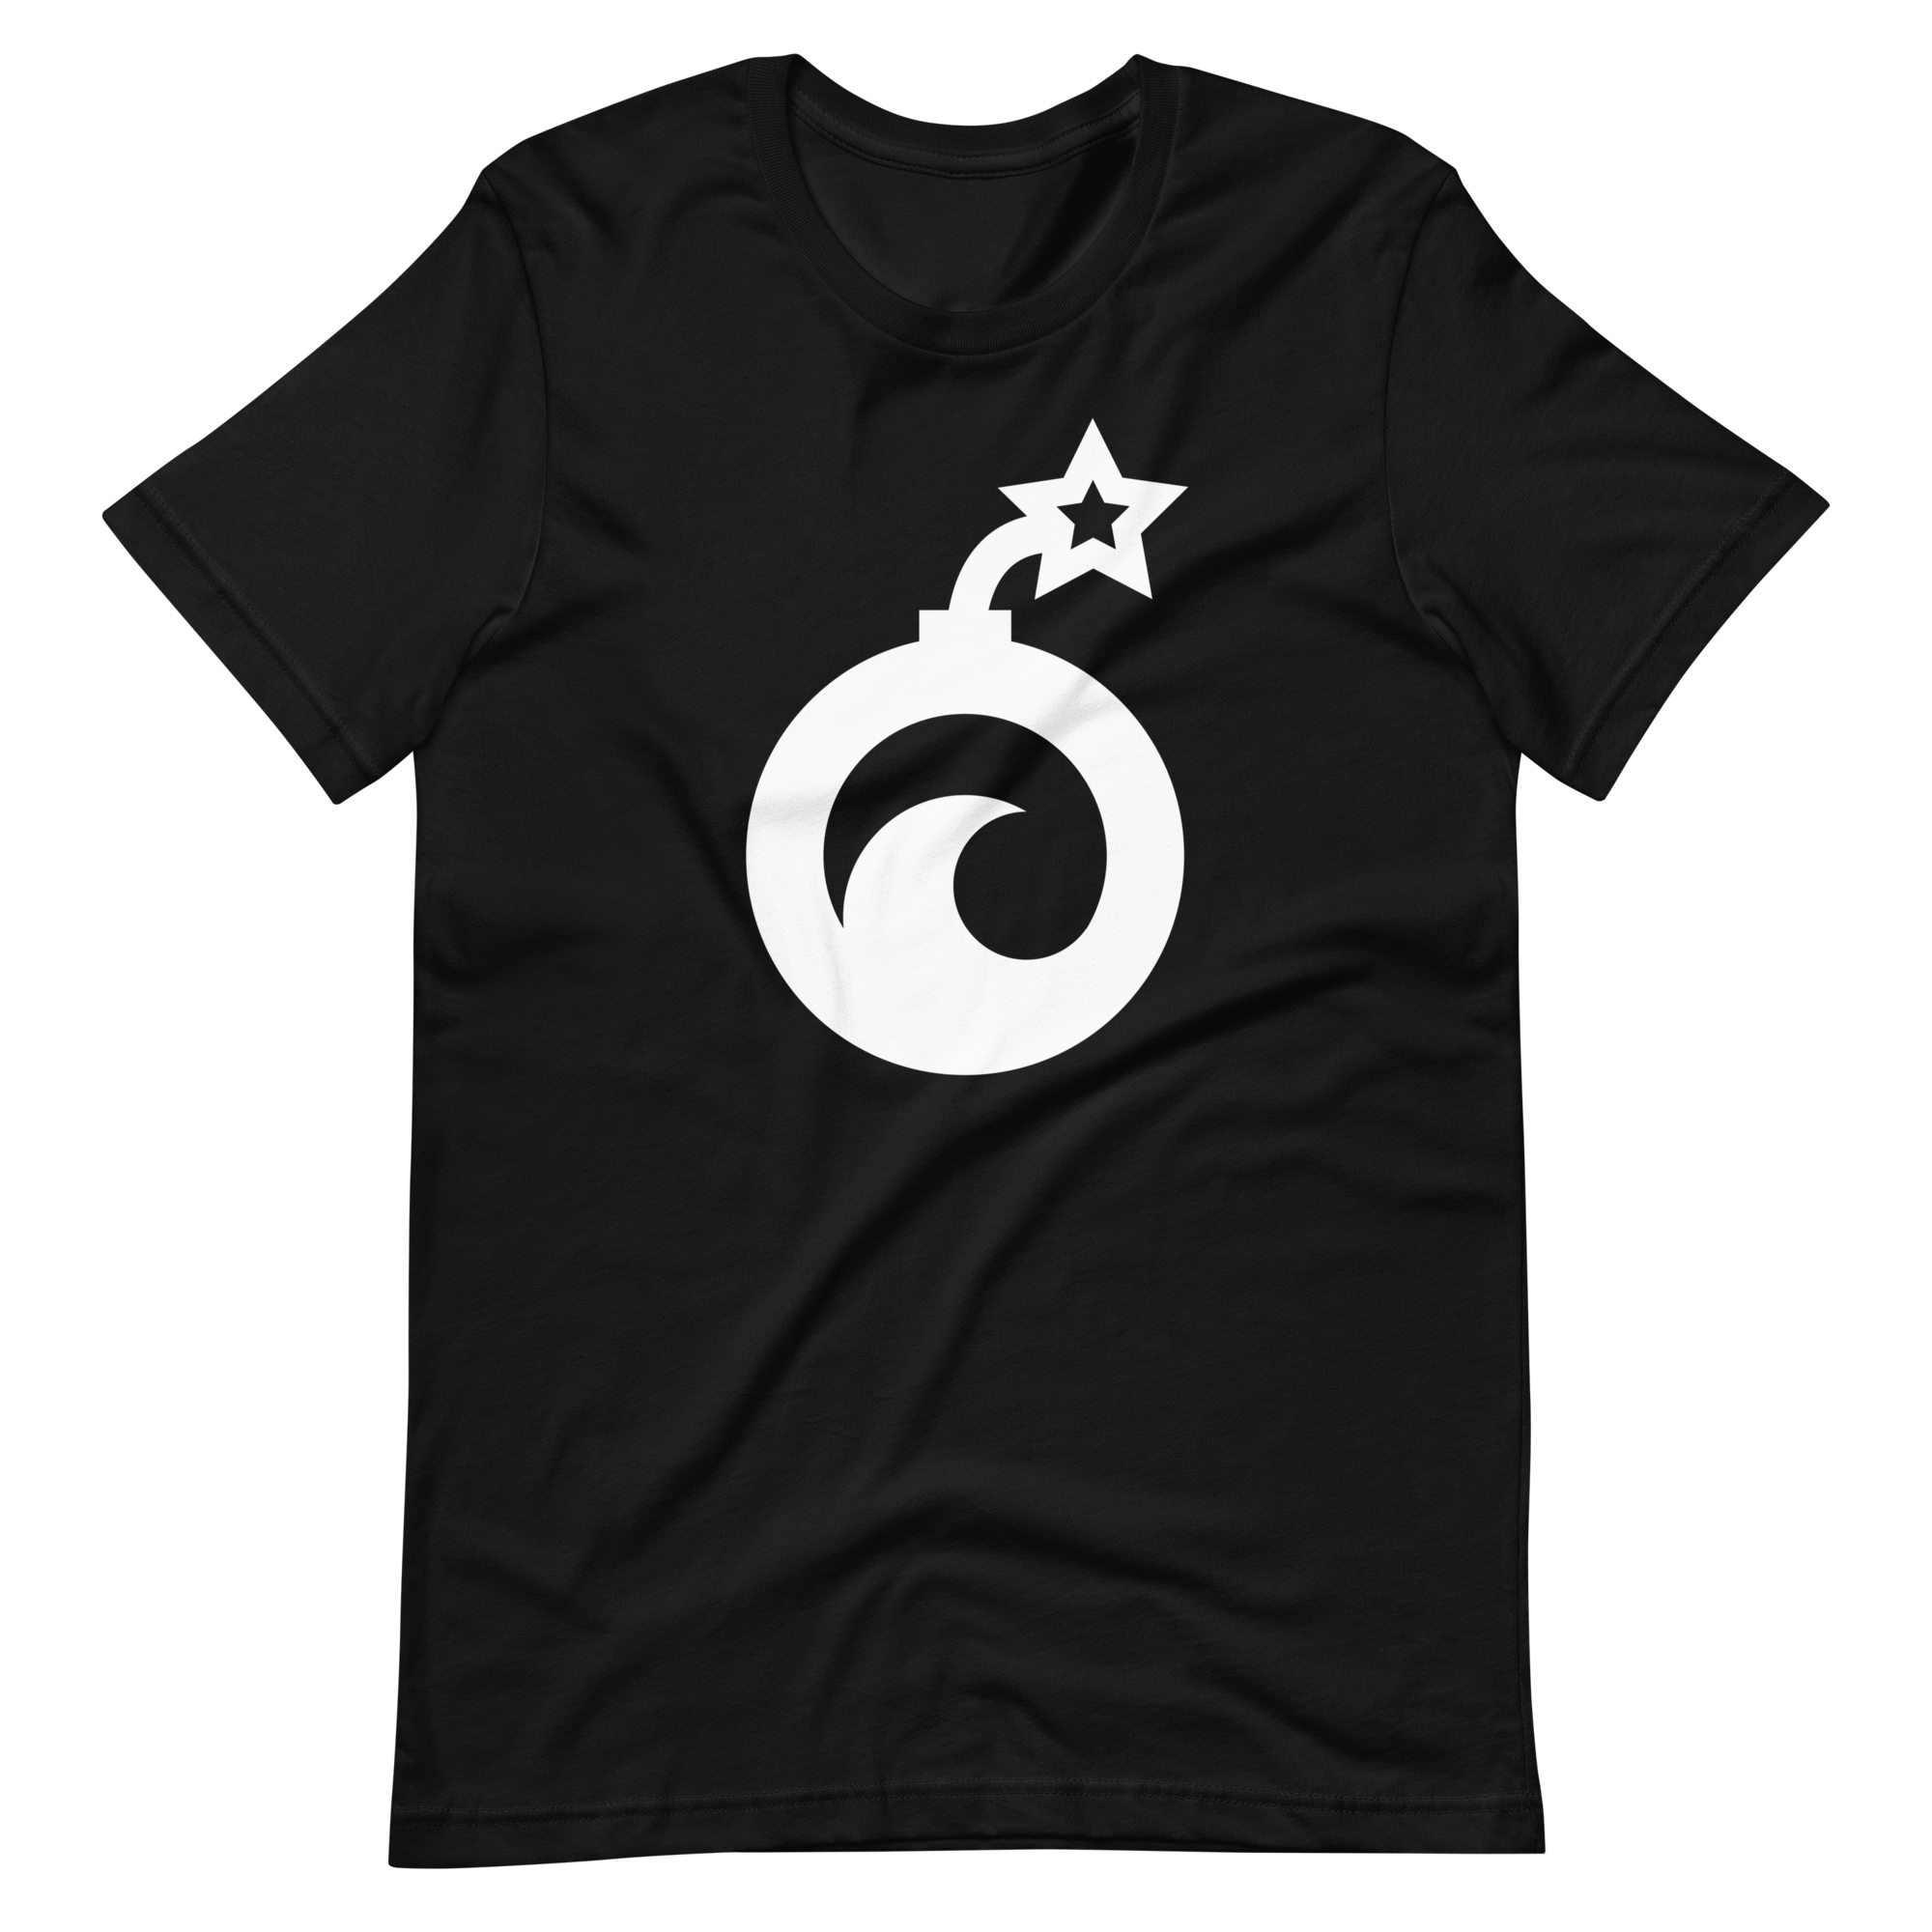 unisex-staple-t-shirt-black-front-639d7e2200376.png